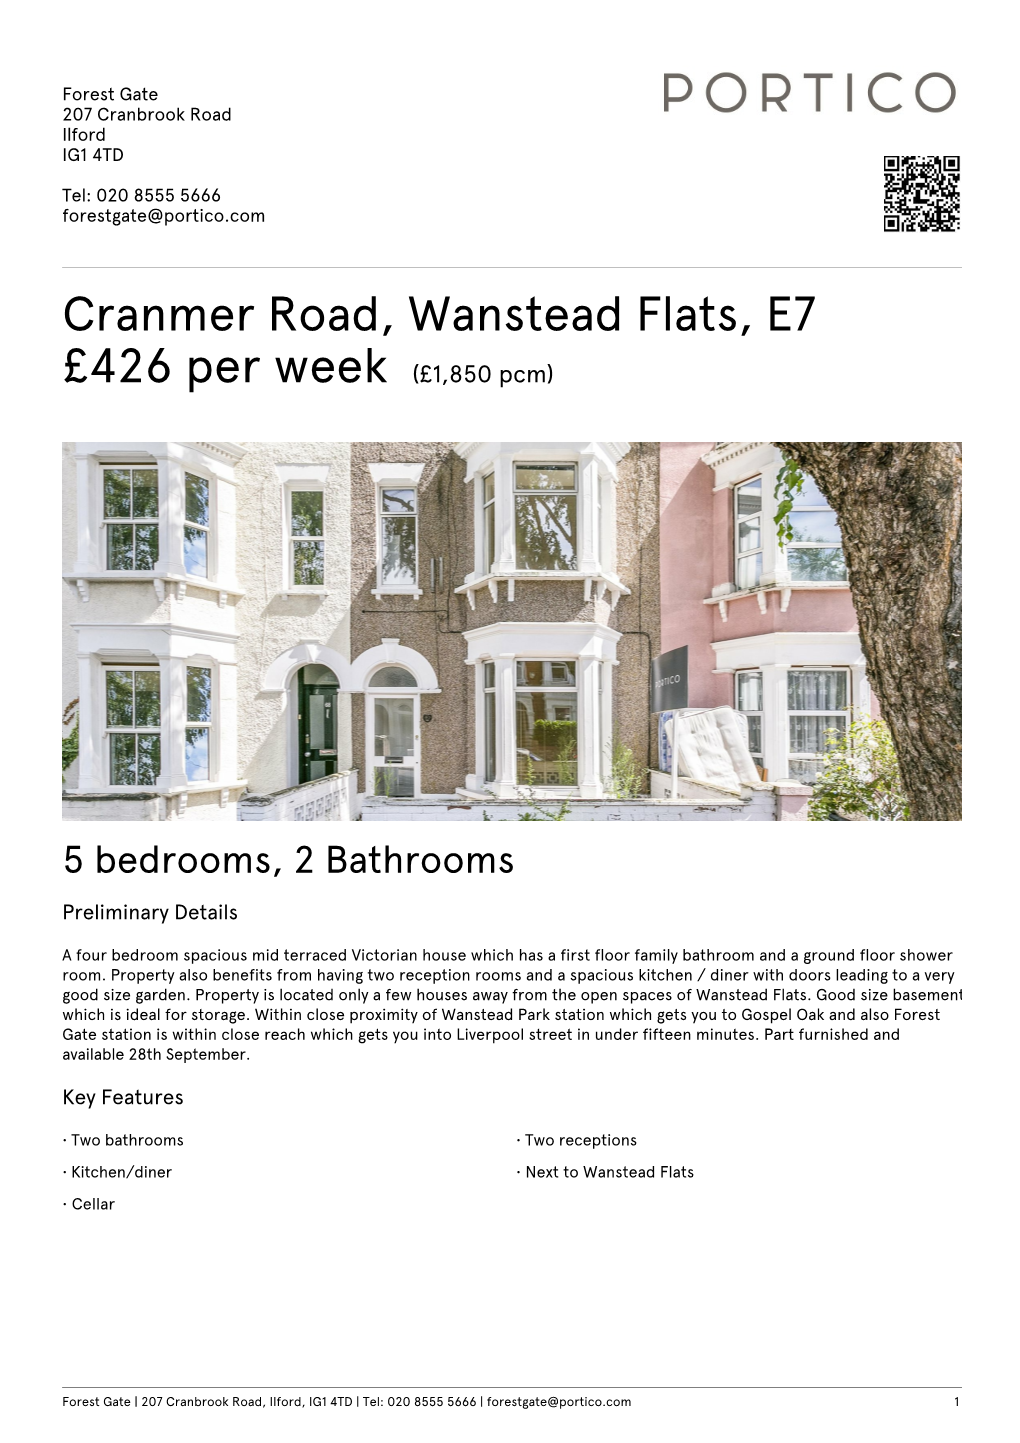 Cranmer Road, Wanstead Flats, E7 £426 Per Week